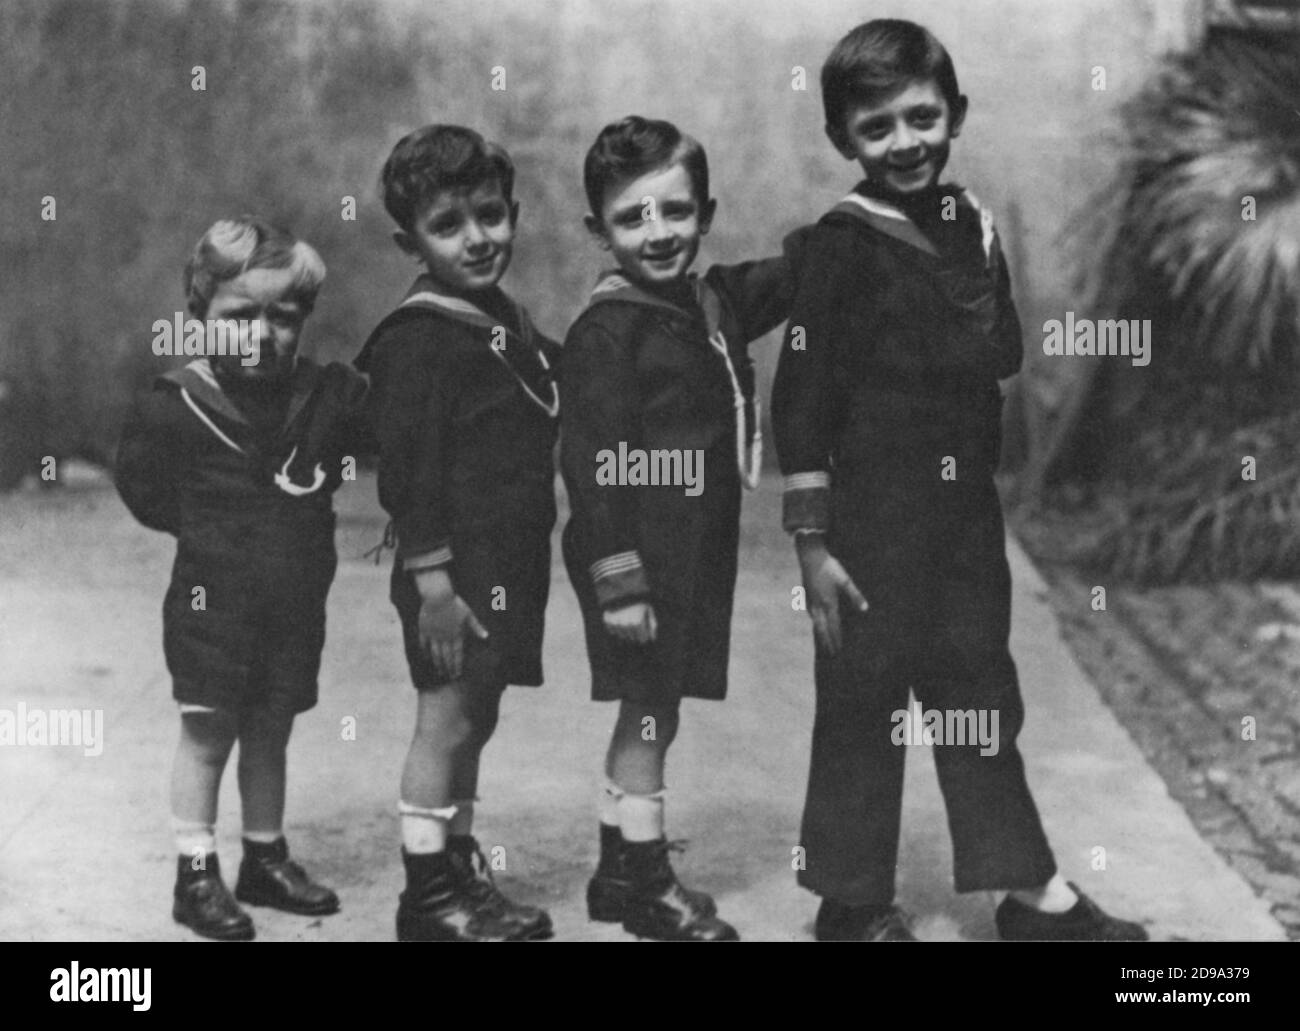 1924 CA , Roma , ITALIE : RAIMONDO VIANELLO ( né à Roma, le 7 mai 1922 ), premier de gauche , célèbre italien actormarié avec Sandra Mondaini, Avec ses 3 frères - TELEVISIONE - TÉLÉVISION - ACTRICE - ATTORE - TEATRO LEGGERO - THÉÂTRE - fratelli - personalita' da giovane - giovani - da bambini - célébrités célébrité quand était jeune --- Archivio GBB Banque D'Images